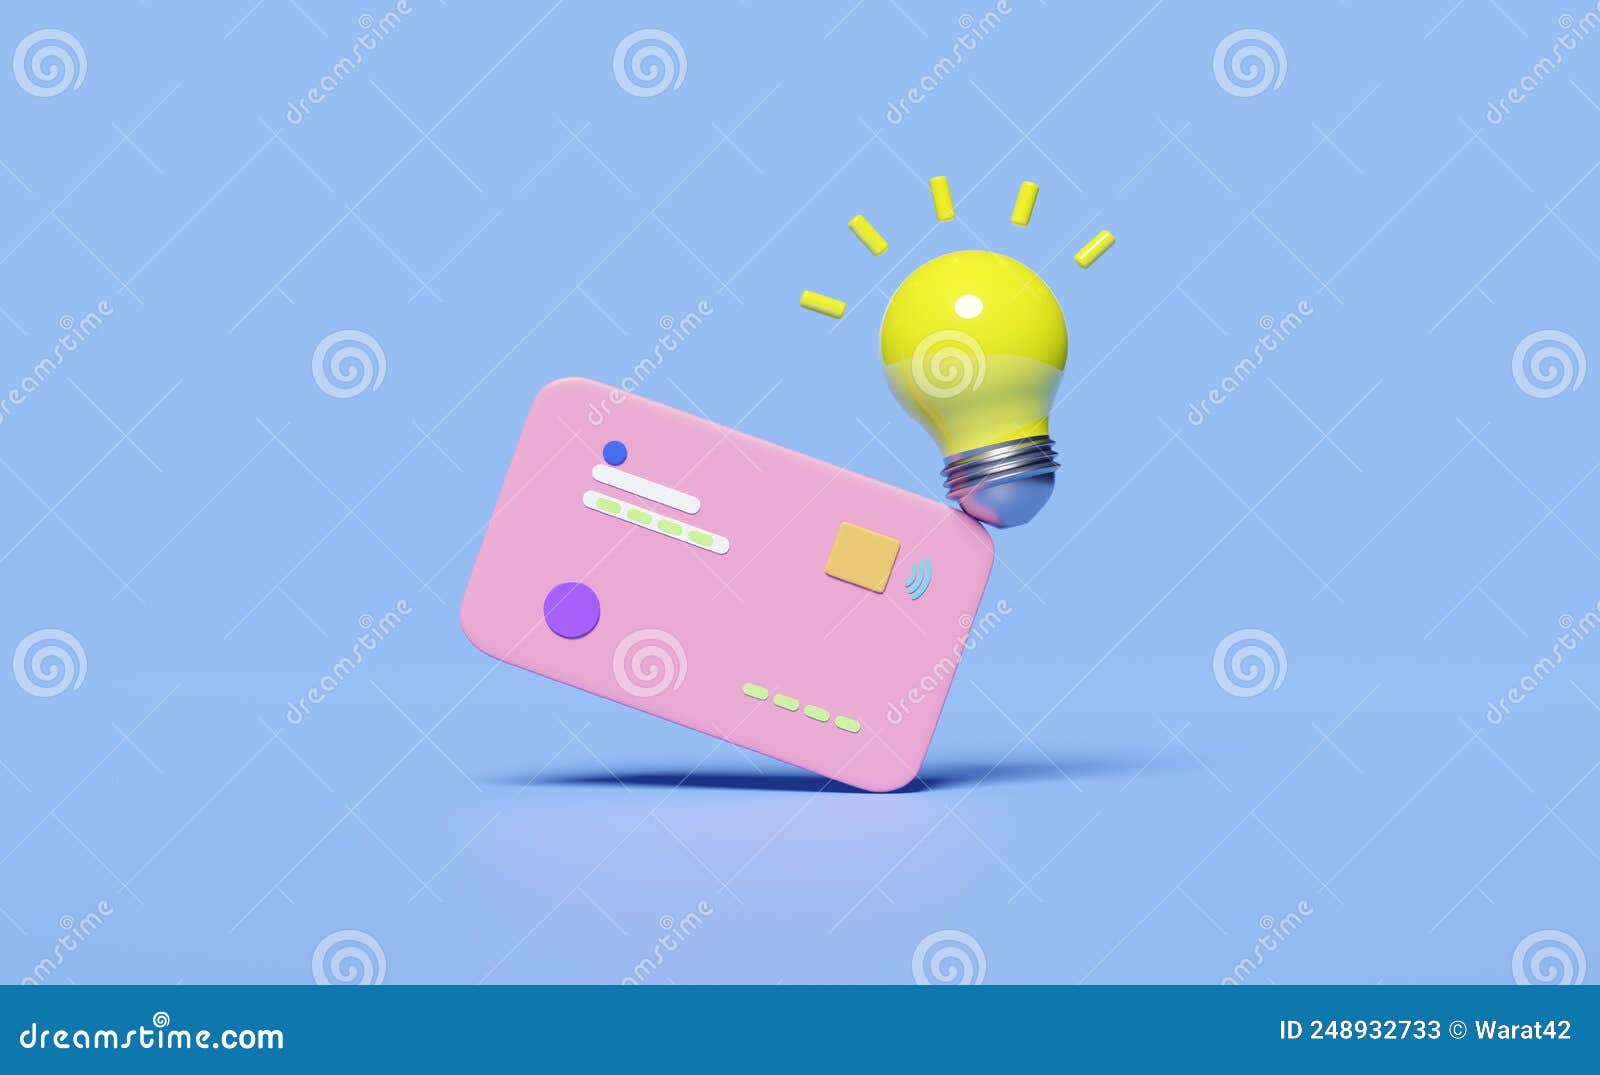 значок кредитной карты с желтой лампой 3d, изолированной на синем фоне.подсказка о покупке онлайн-идеи экономит деньги Иллюстрация штока -иллюстрации насчитывающей обмен, доход: 248932733